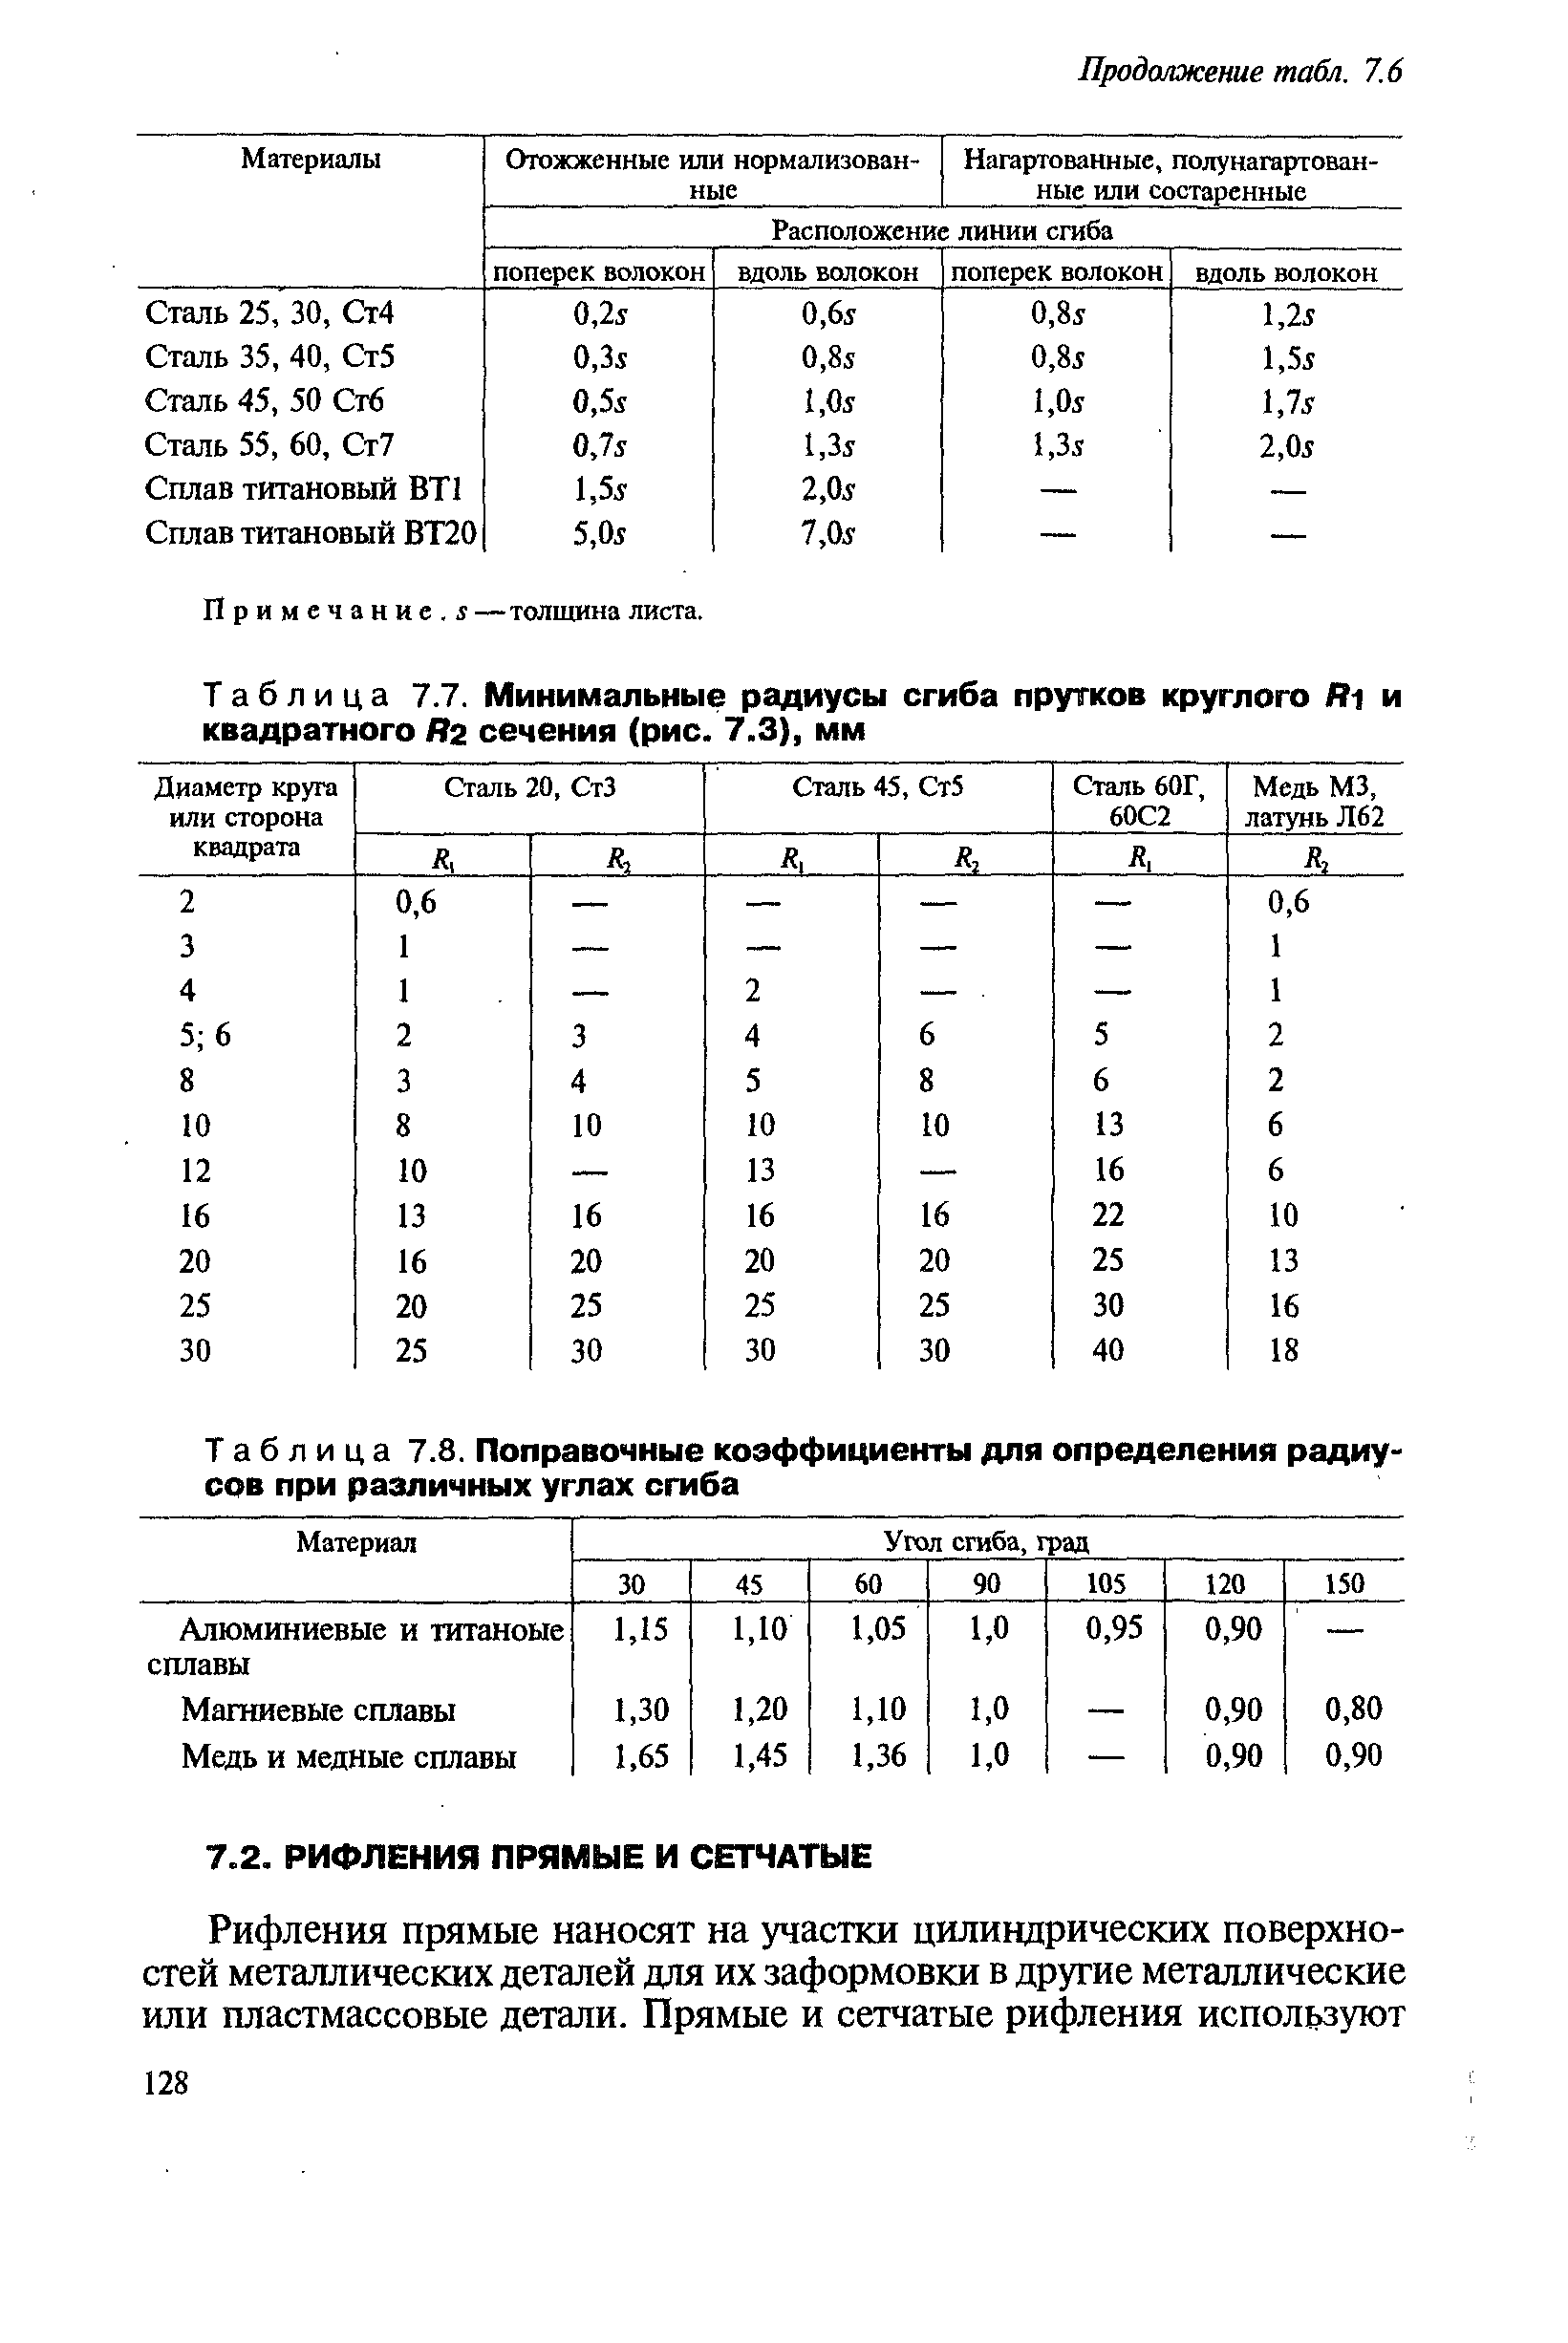 Таблица 7.8. Поправочные коэффициенты для определения радиусов при различных углах сгиба
